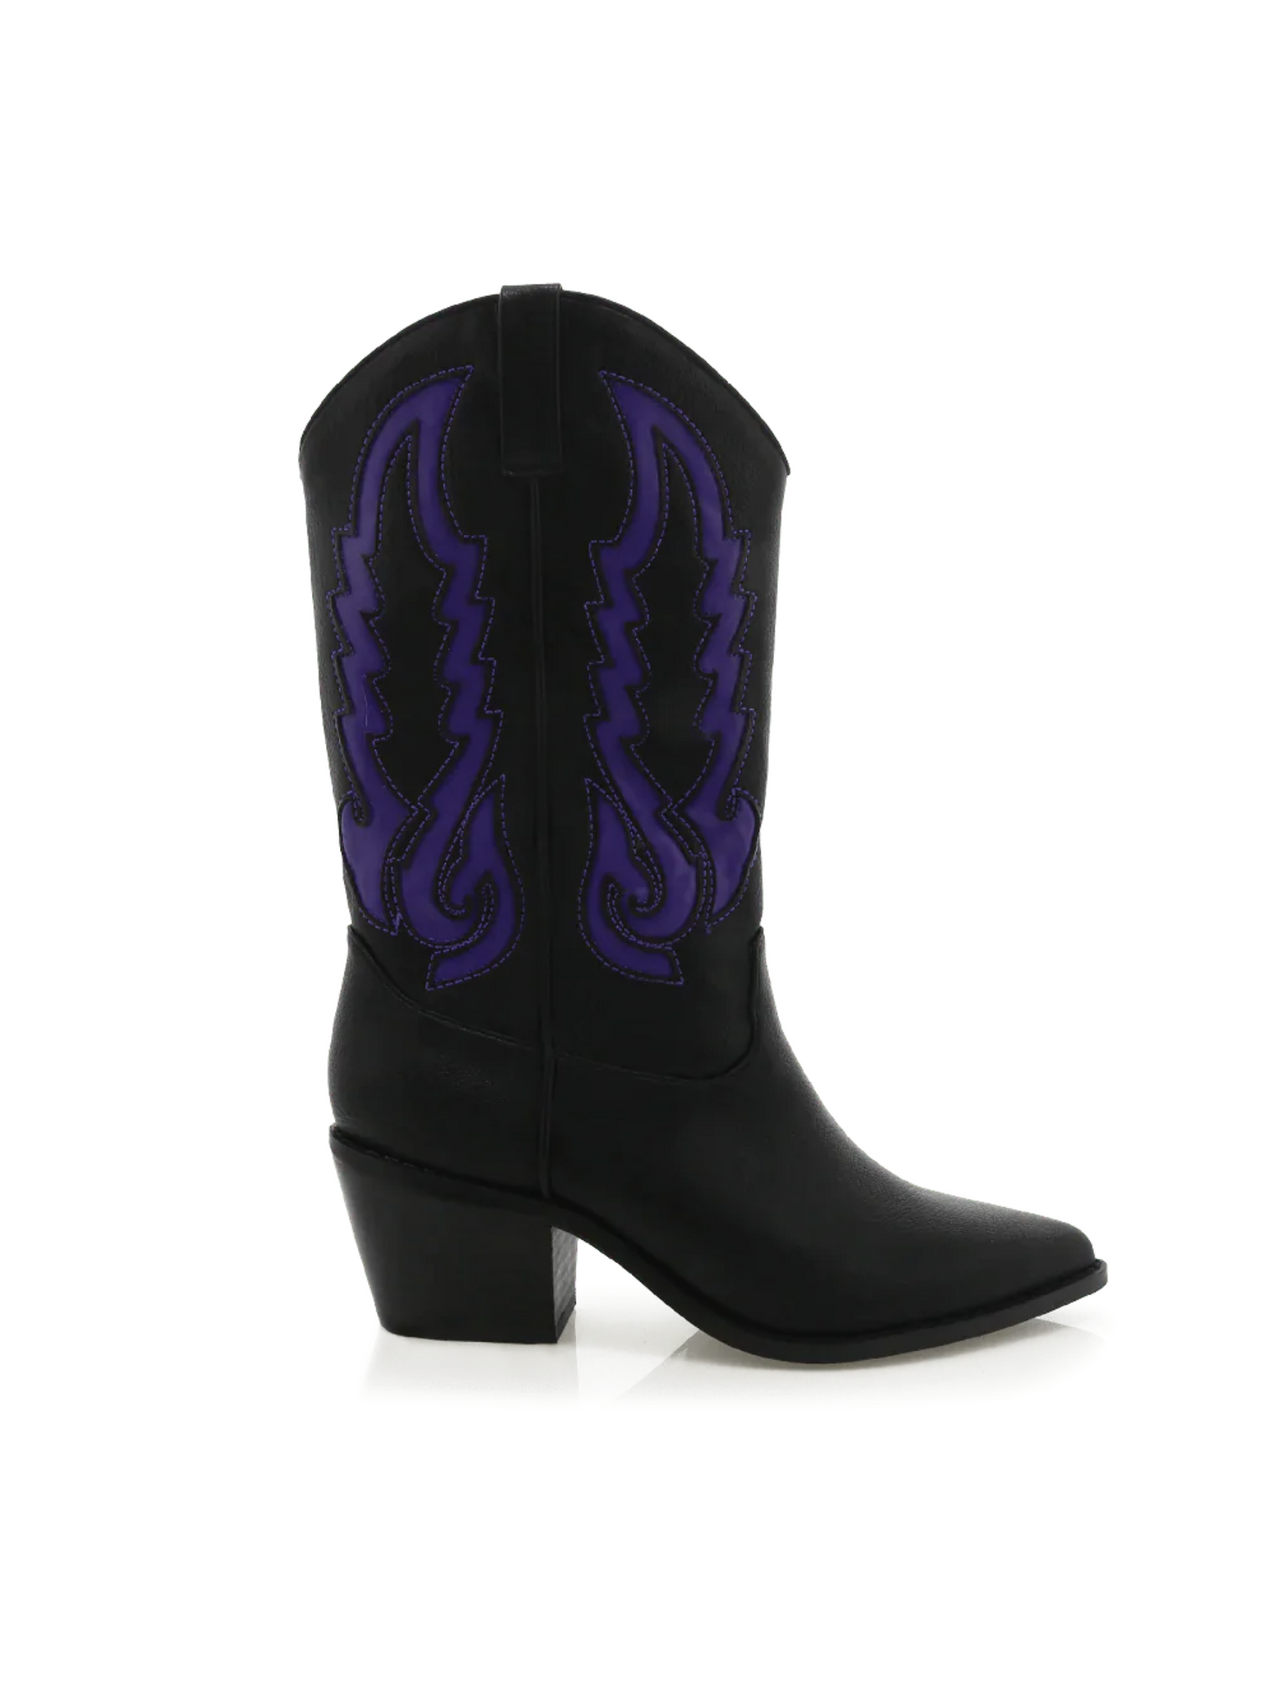 Norva Contrast Cowboy Boots Black/Violet, Boot Shoe by Billini | LIT Boutique